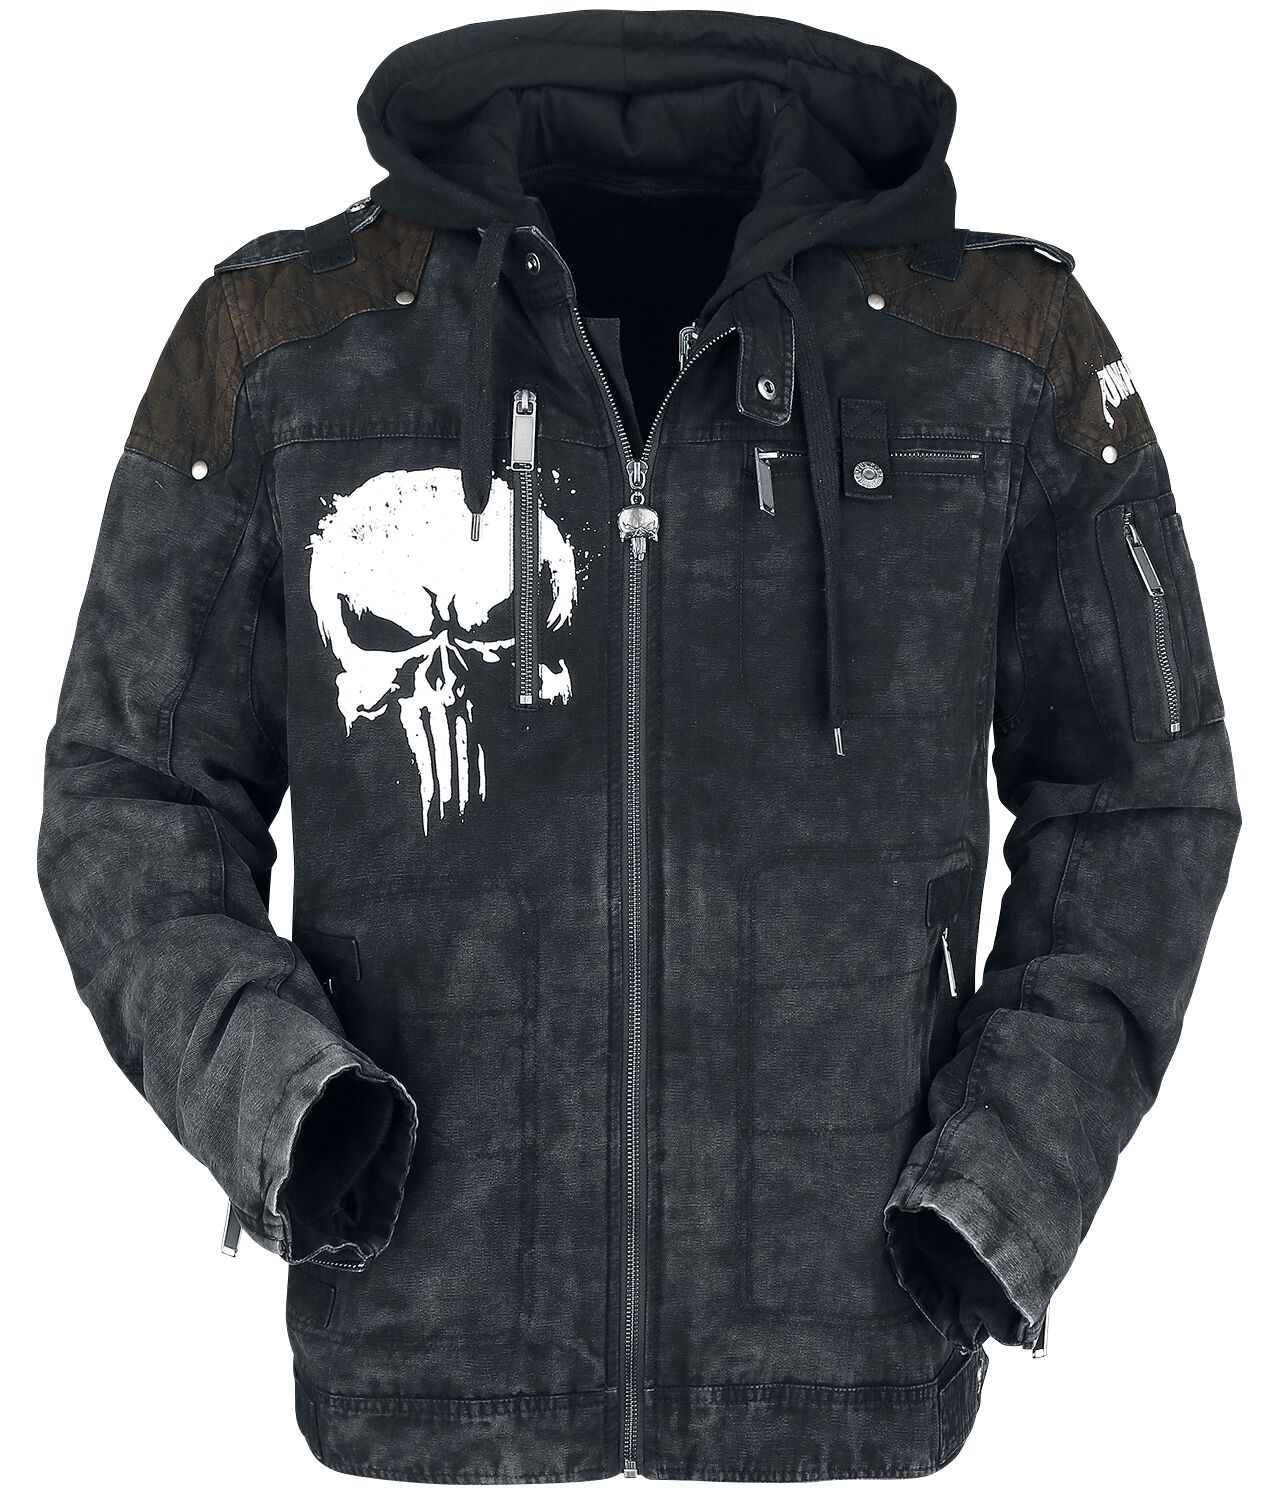 The Punisher - Marvel Winterjacke - Skull - S bis XXL - für Männer - Größe L - schwarz  - EMP exklusives Merchandise!